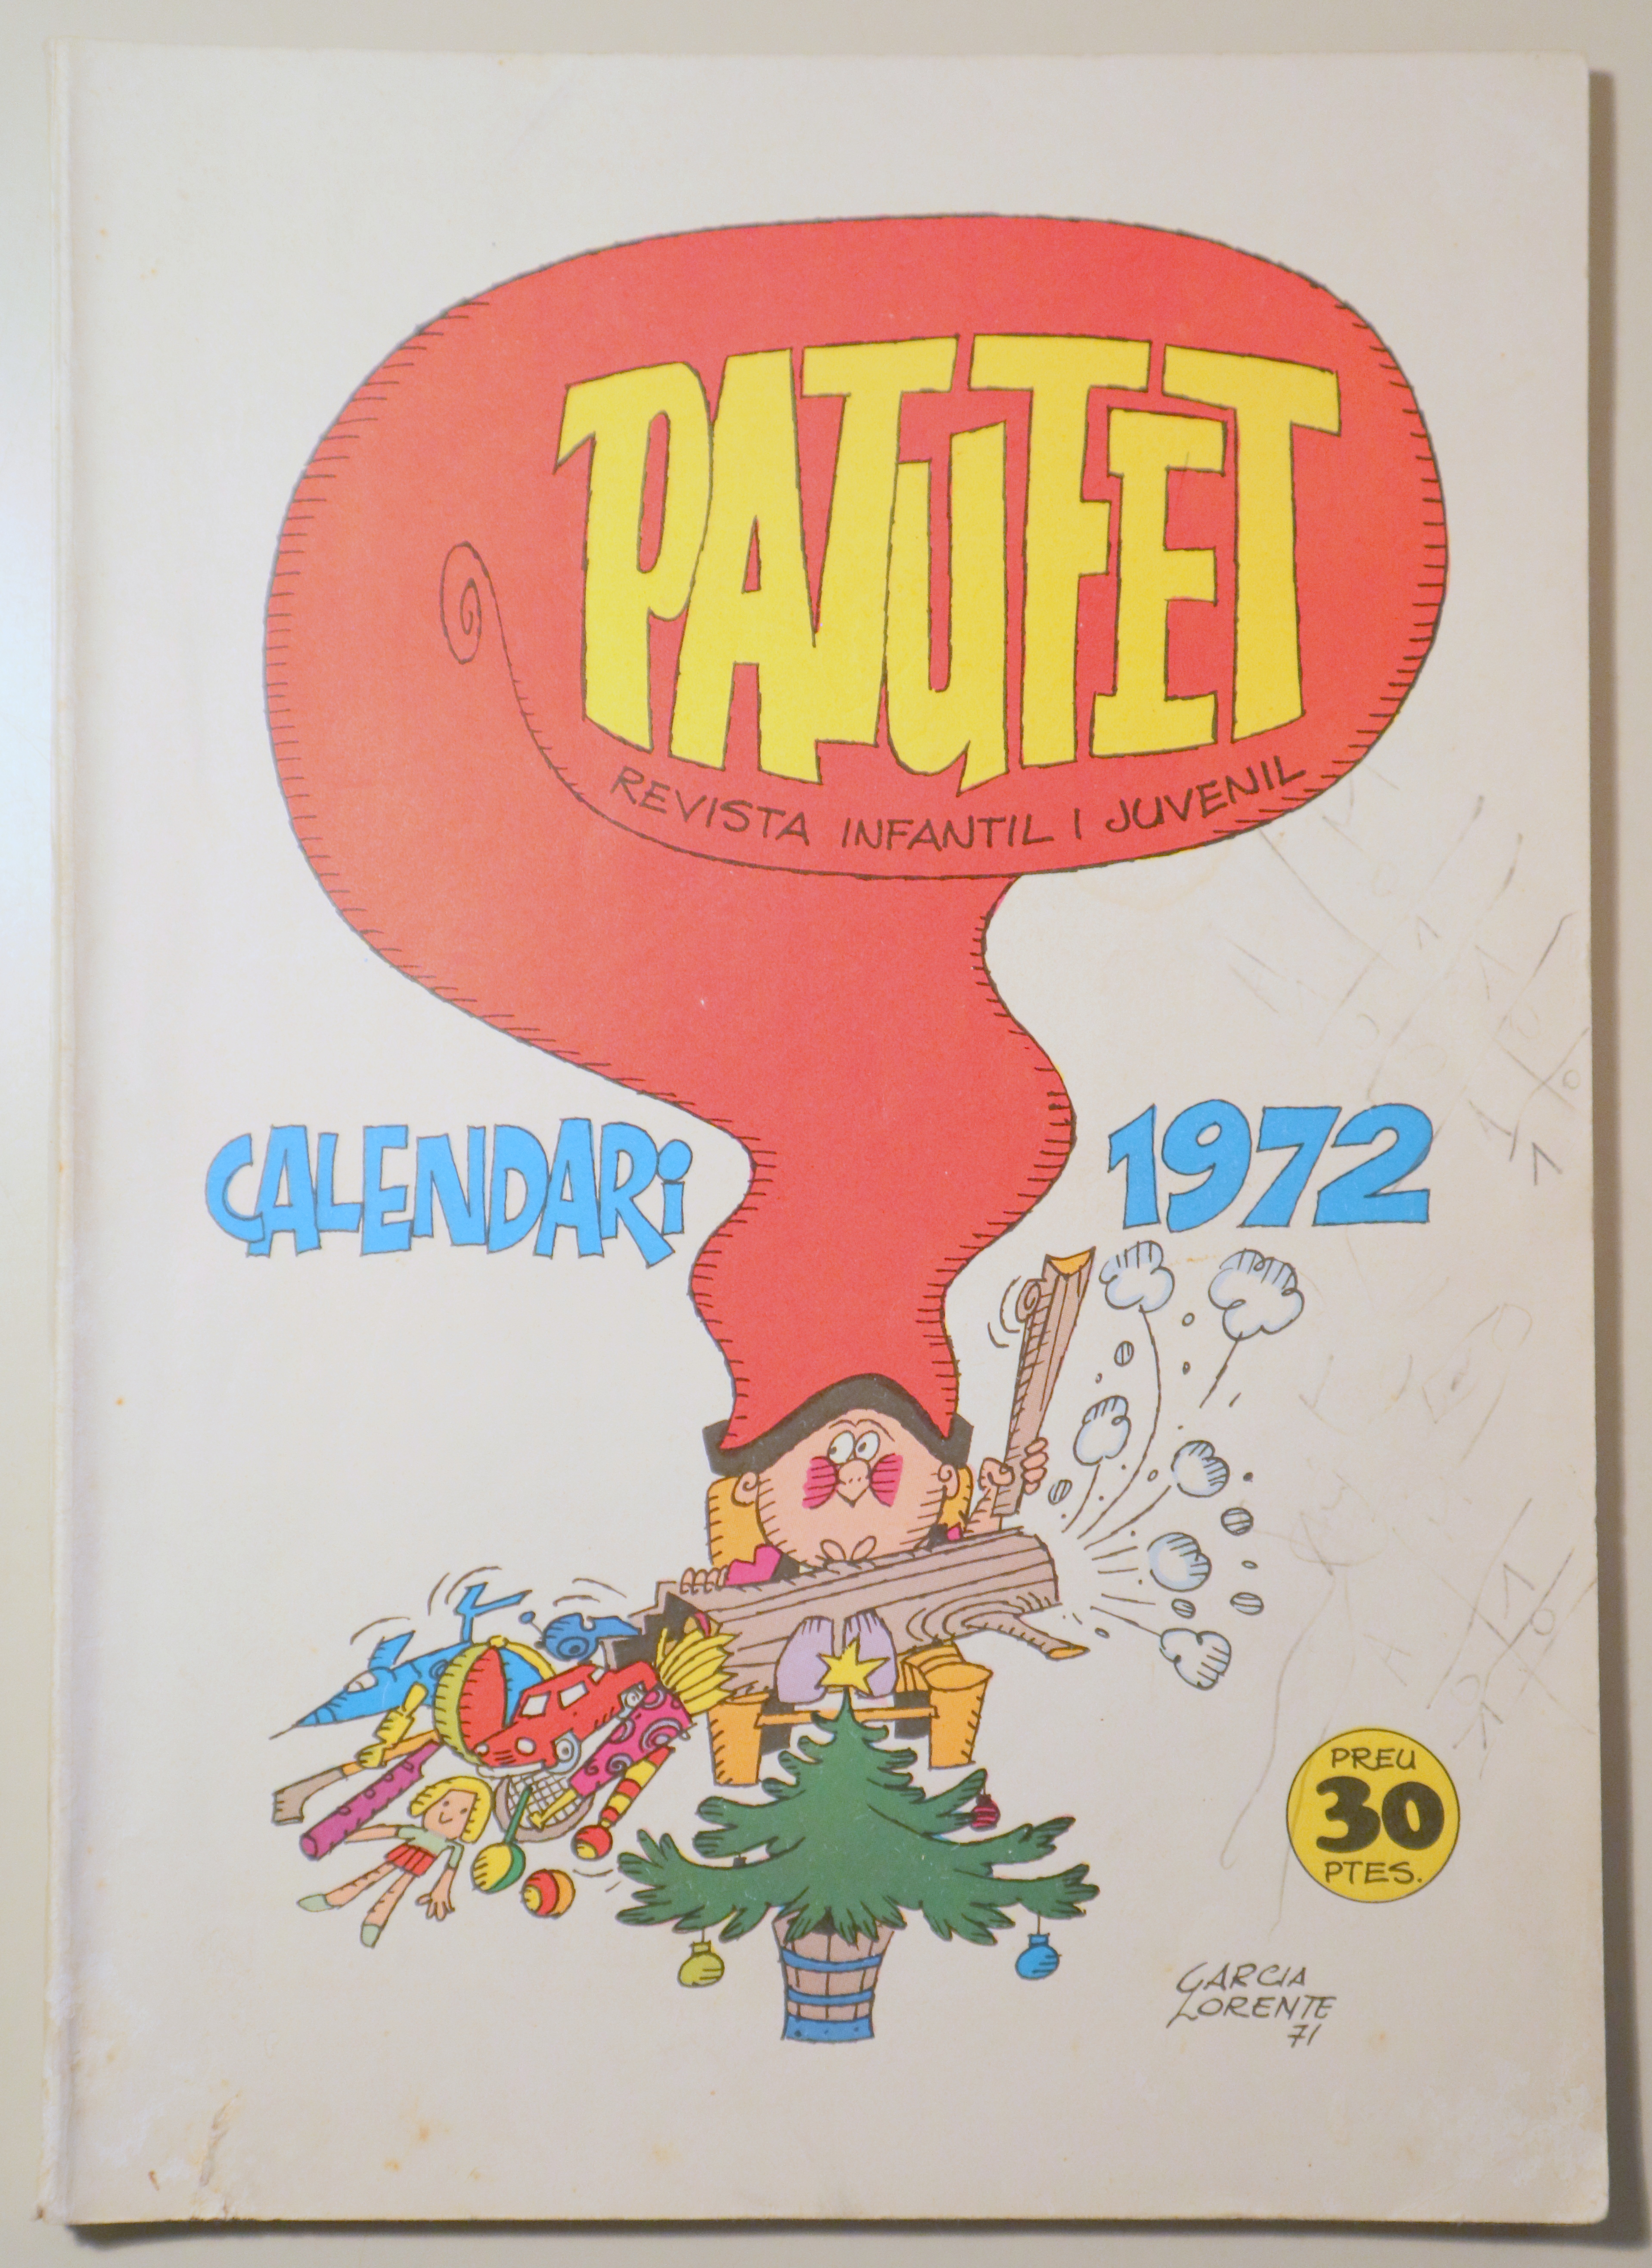 PATUFET. Revista Infantil i Juvenil. CALENDARI 1972 - Barcelona 1972 - Molt il·lustrat